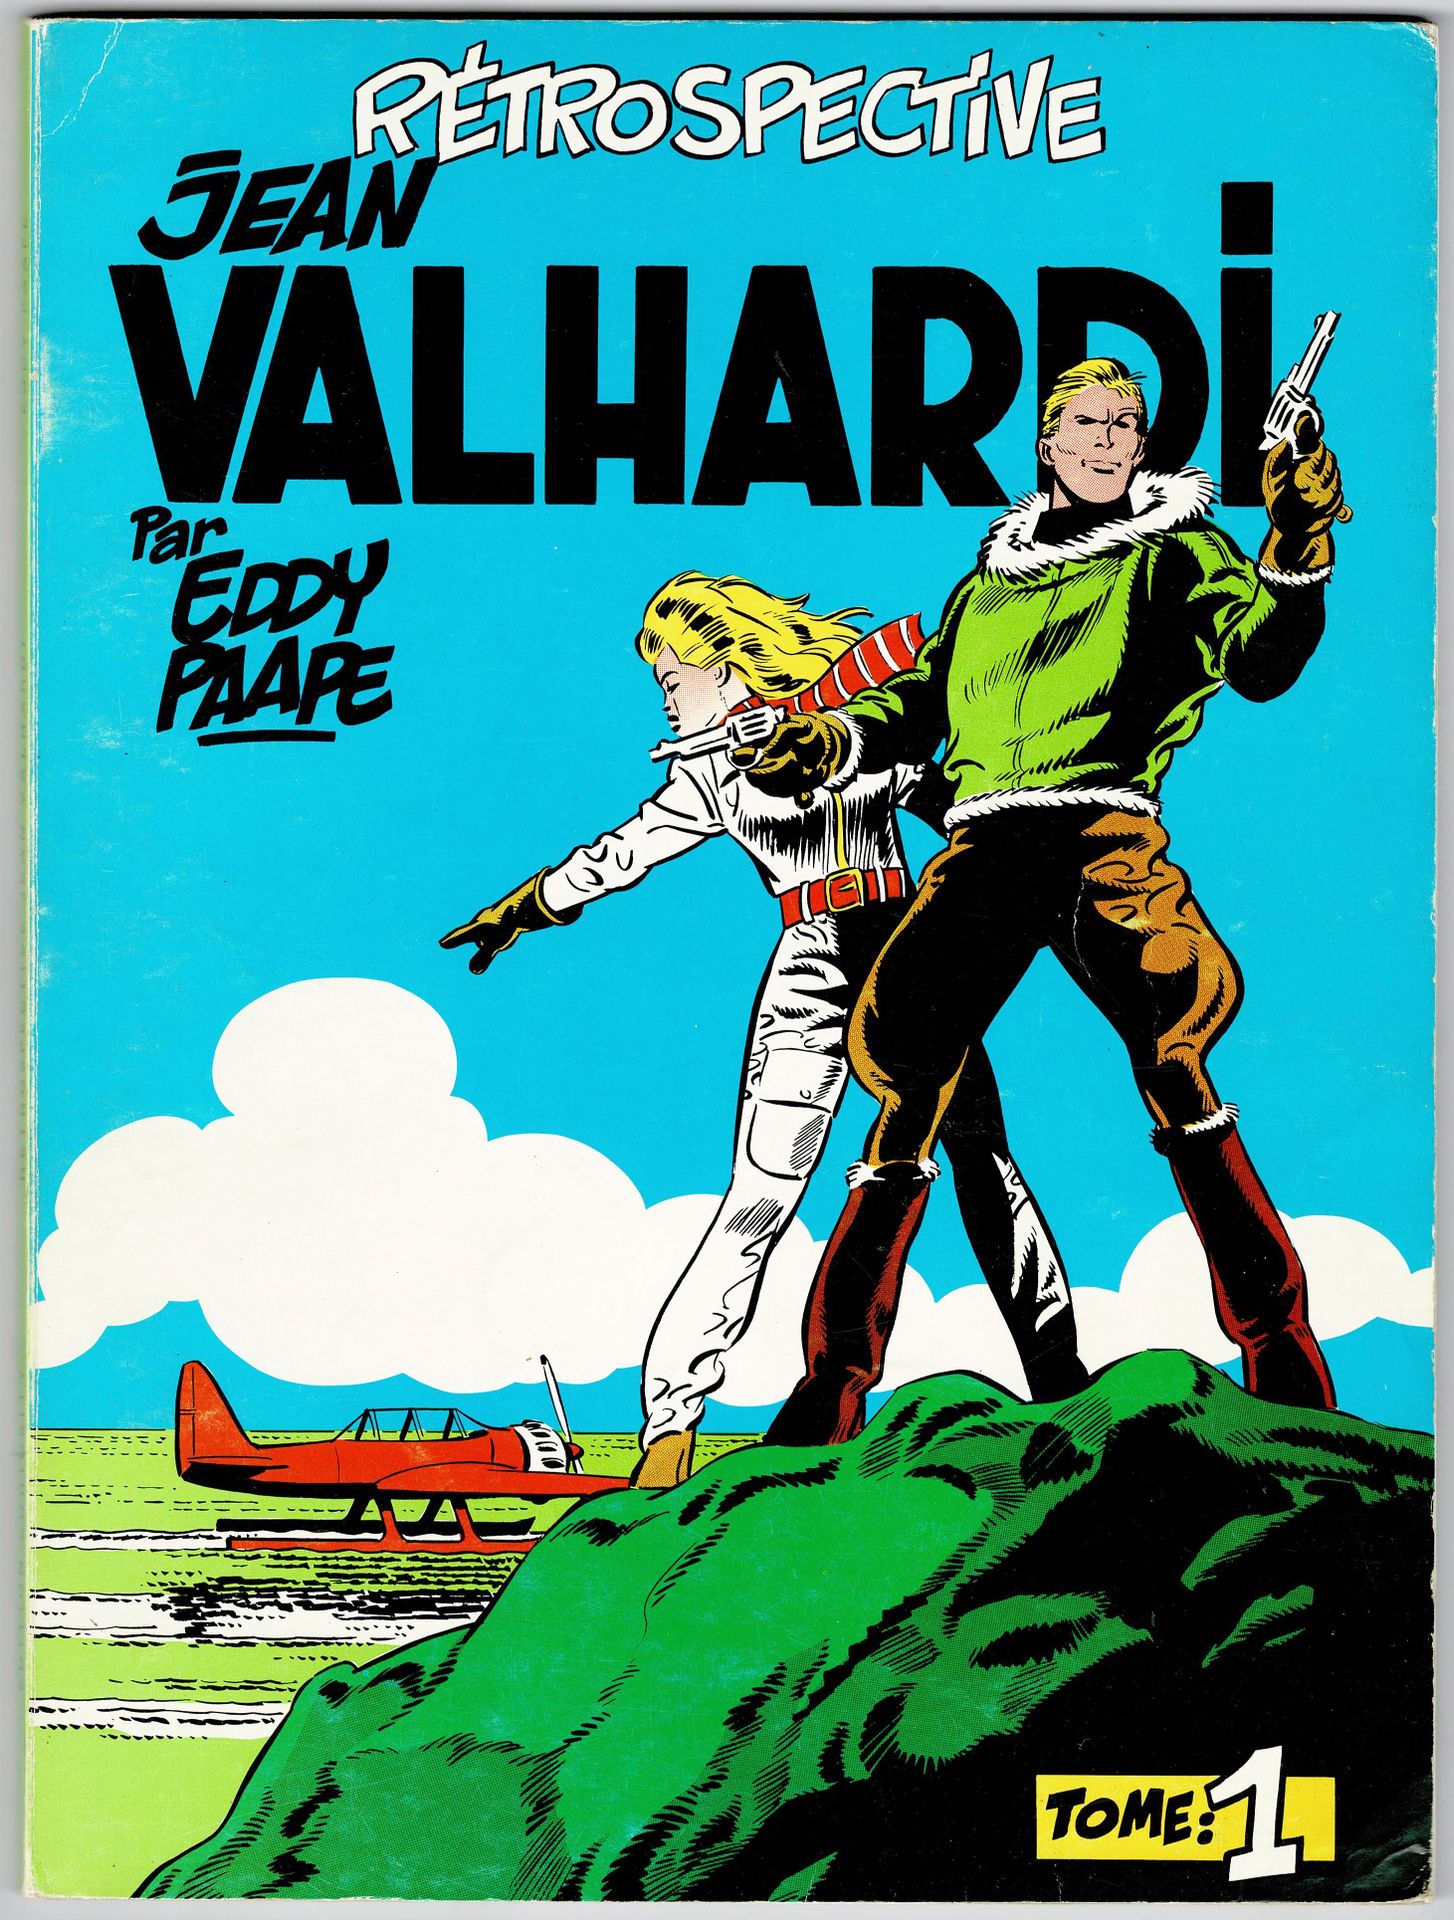 Valhardi 
Retrospektive Jean Valhardi Bände 1 und 2 veröffentlicht von Deligne. &hellip;